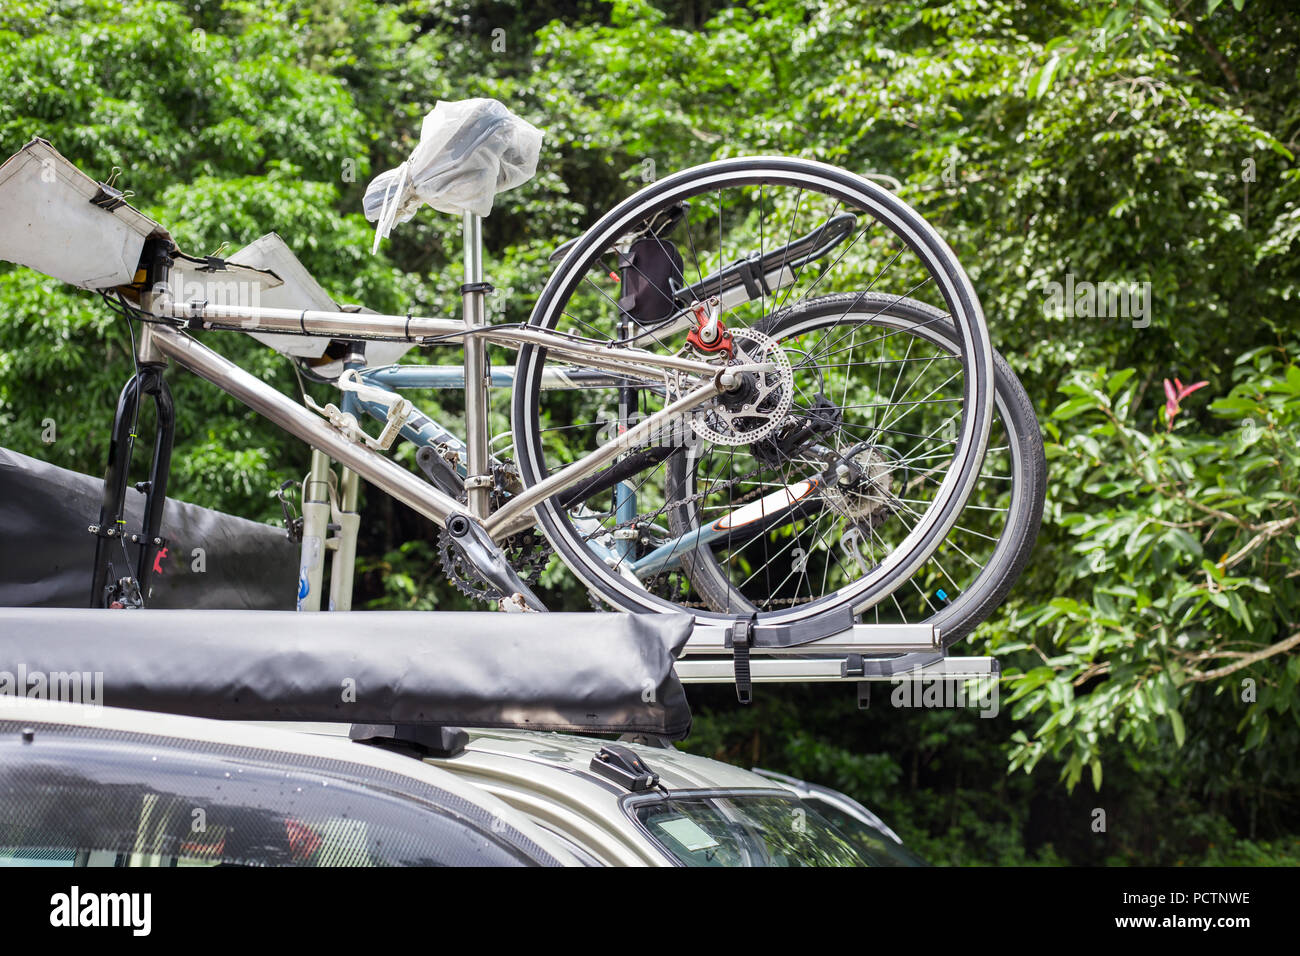 Bike Transport - zwei Fahrräder auf dem Dach eines Autos Stockfotografie -  Alamy